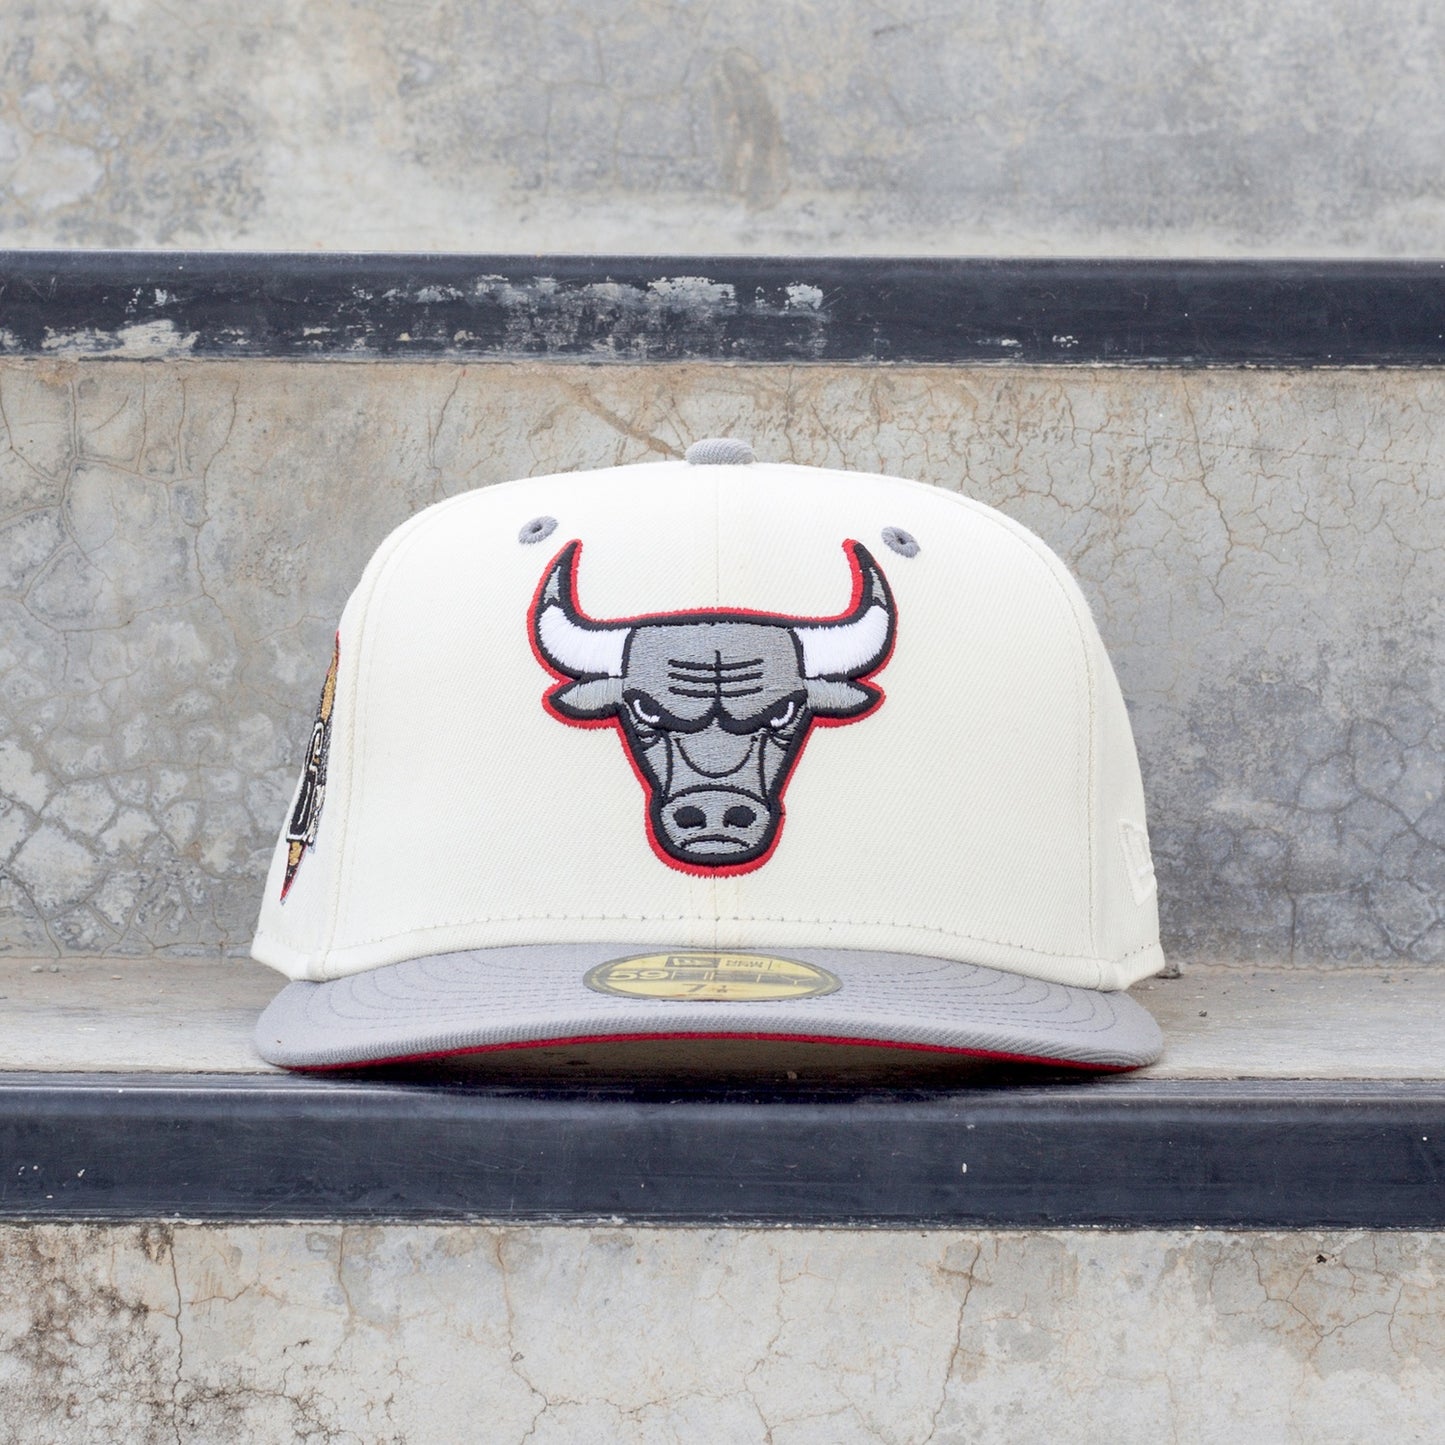 Chicago Bulls Caps